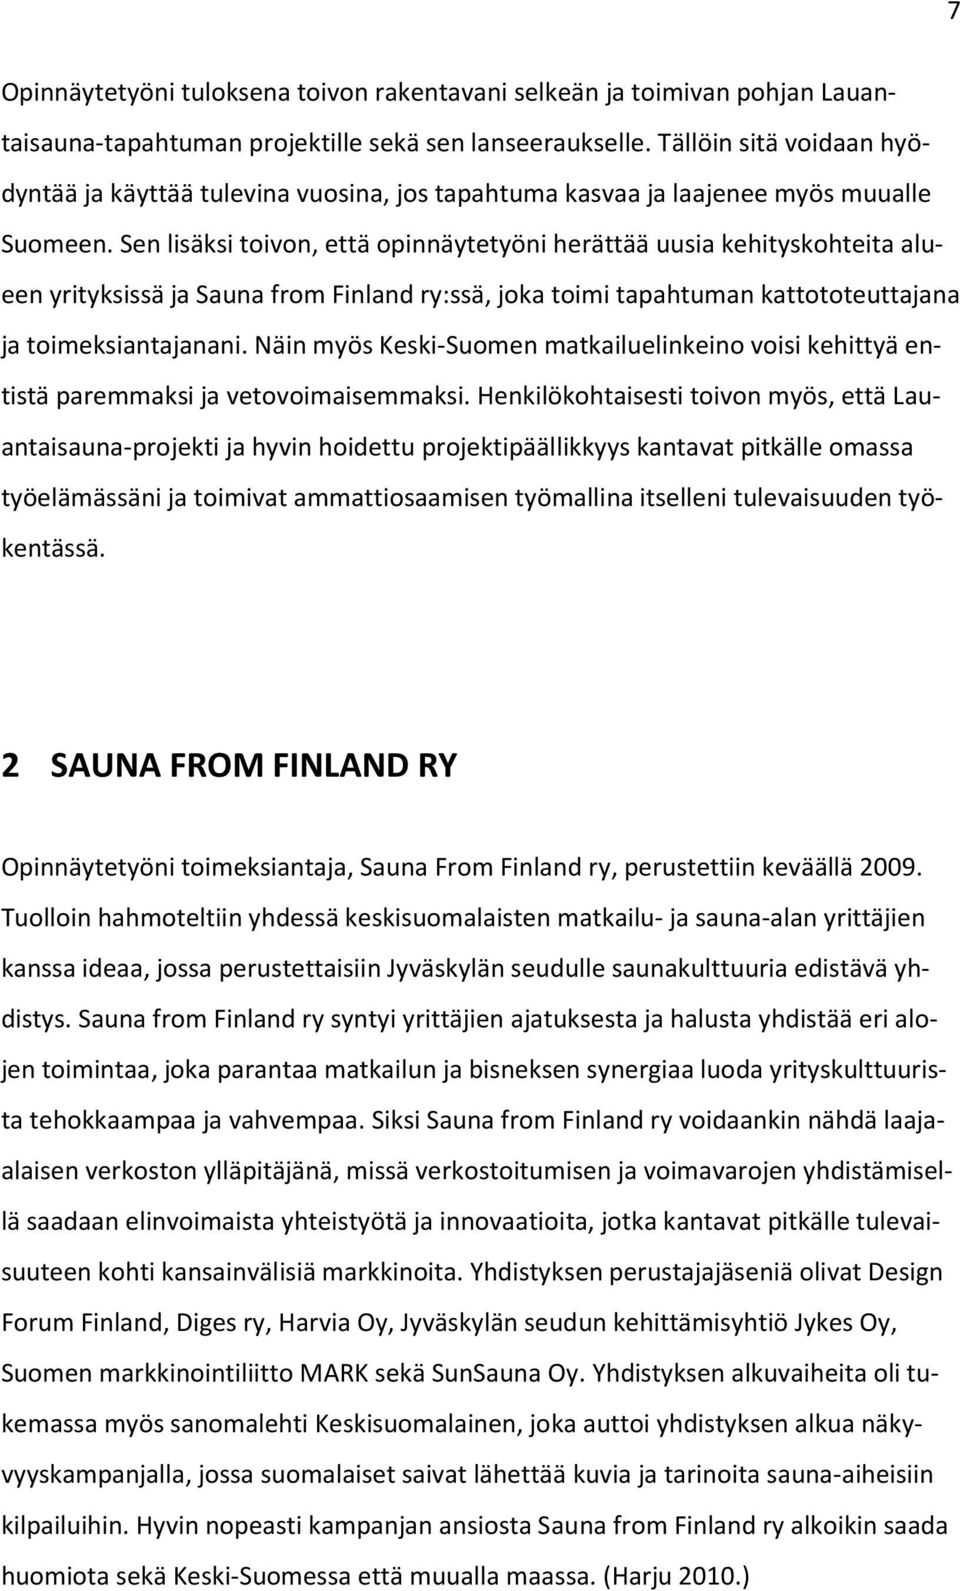 Sen lisäksi toivon, että opinnäytetyöni herättää uusia kehityskohteita alueen yrityksissä ja Sauna from Finland ry:ssä, joka toimi tapahtuman kattototeuttajana ja toimeksiantajanani.